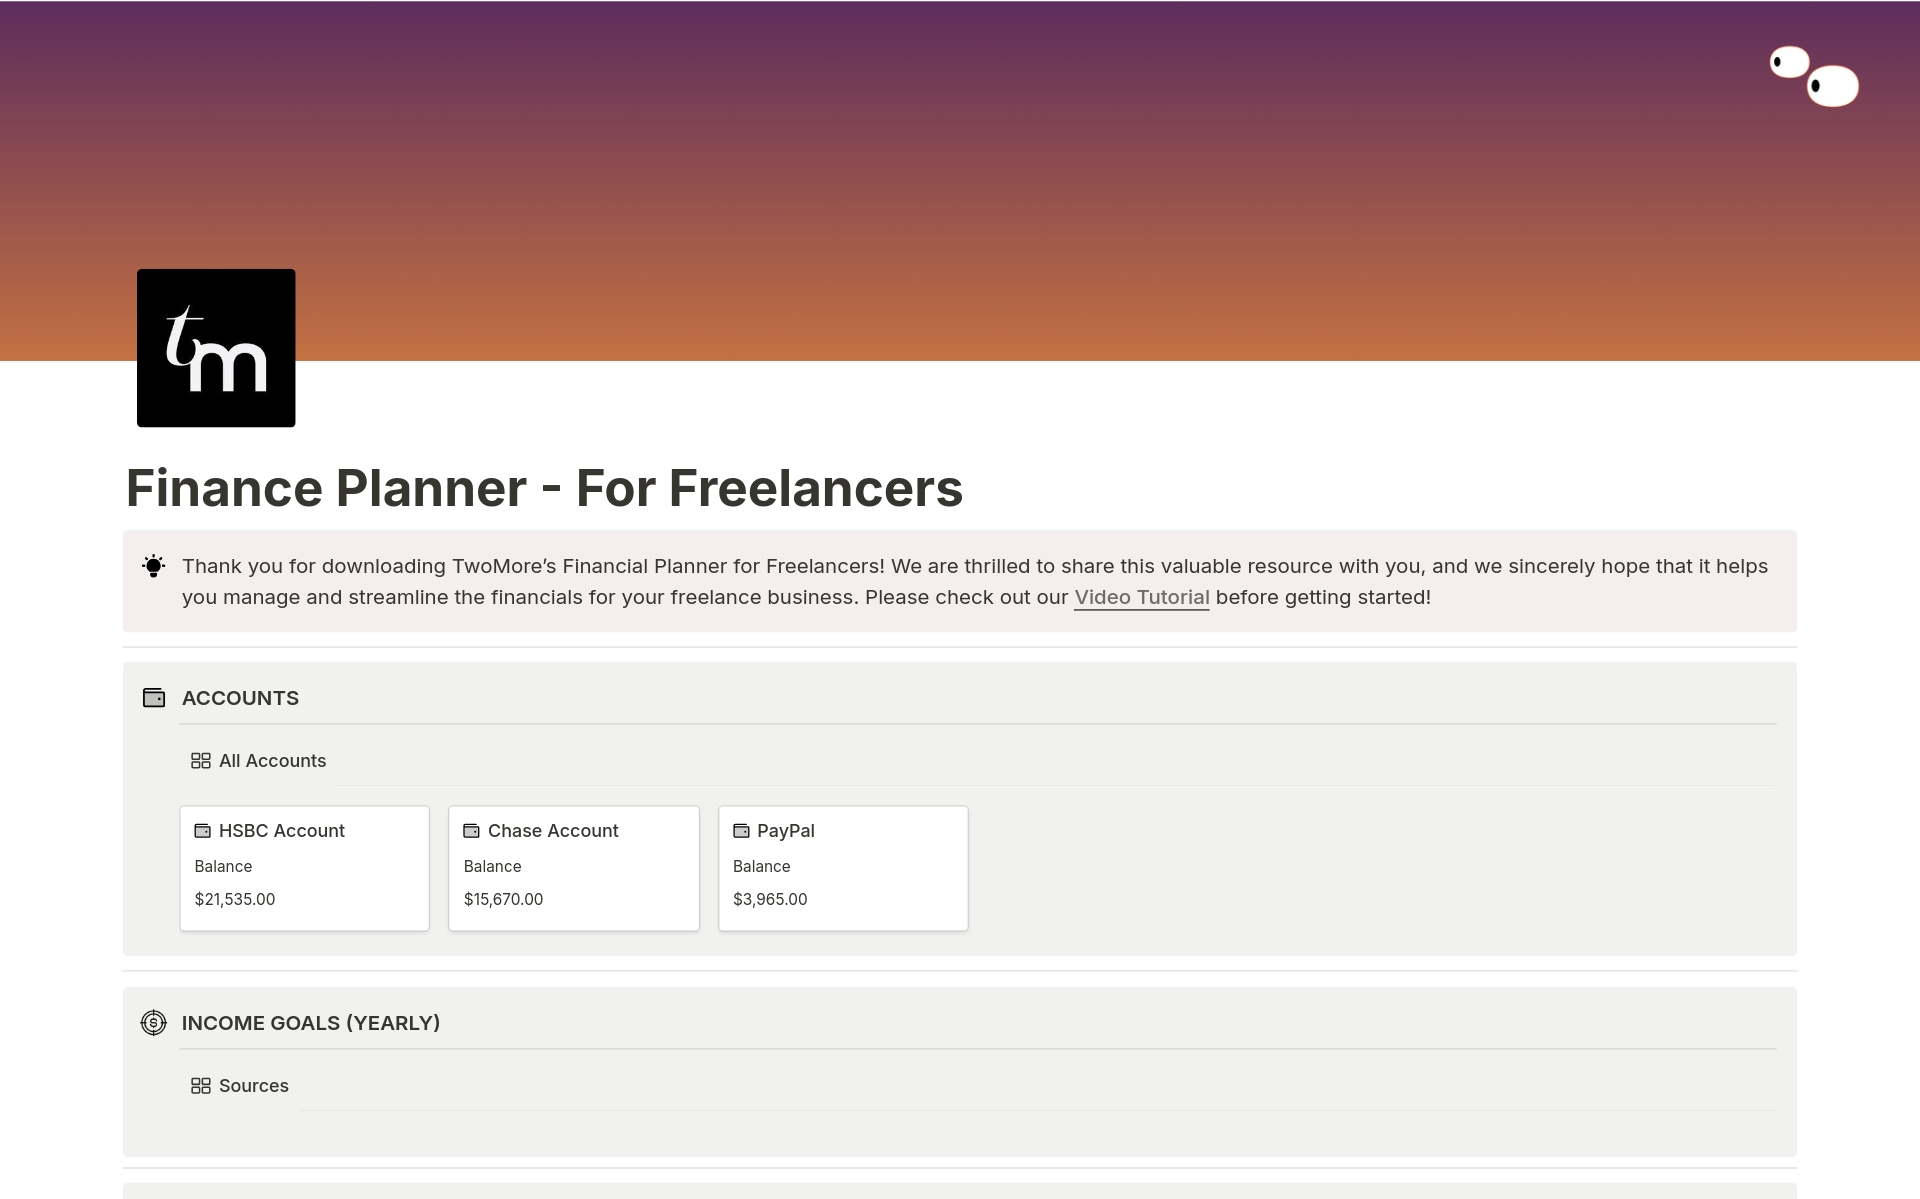 Uma prévia do modelo para Finance Planner - For Freelancers